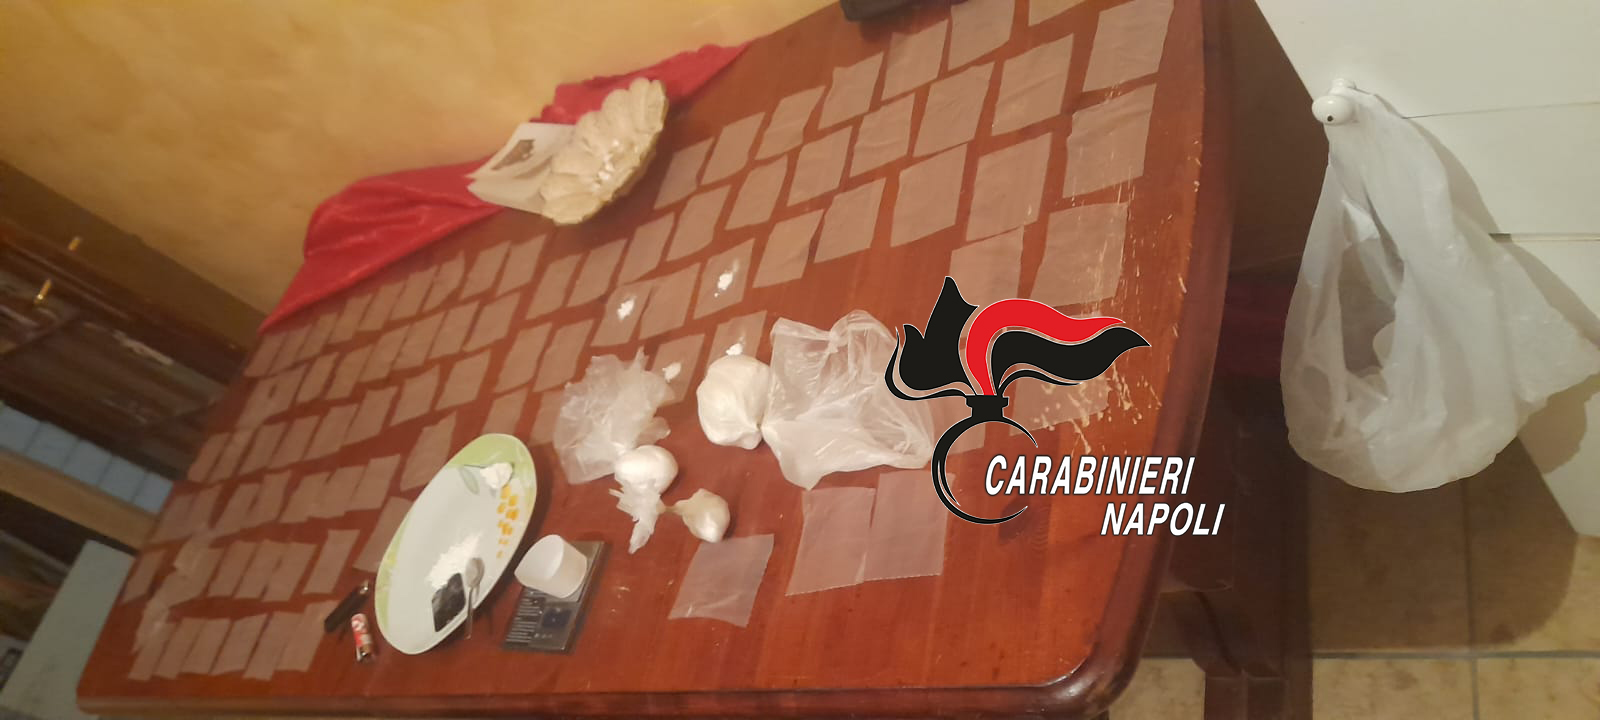 Tavola imbandita per confezionare cocaina: 41enne arrestato dai carabinieri